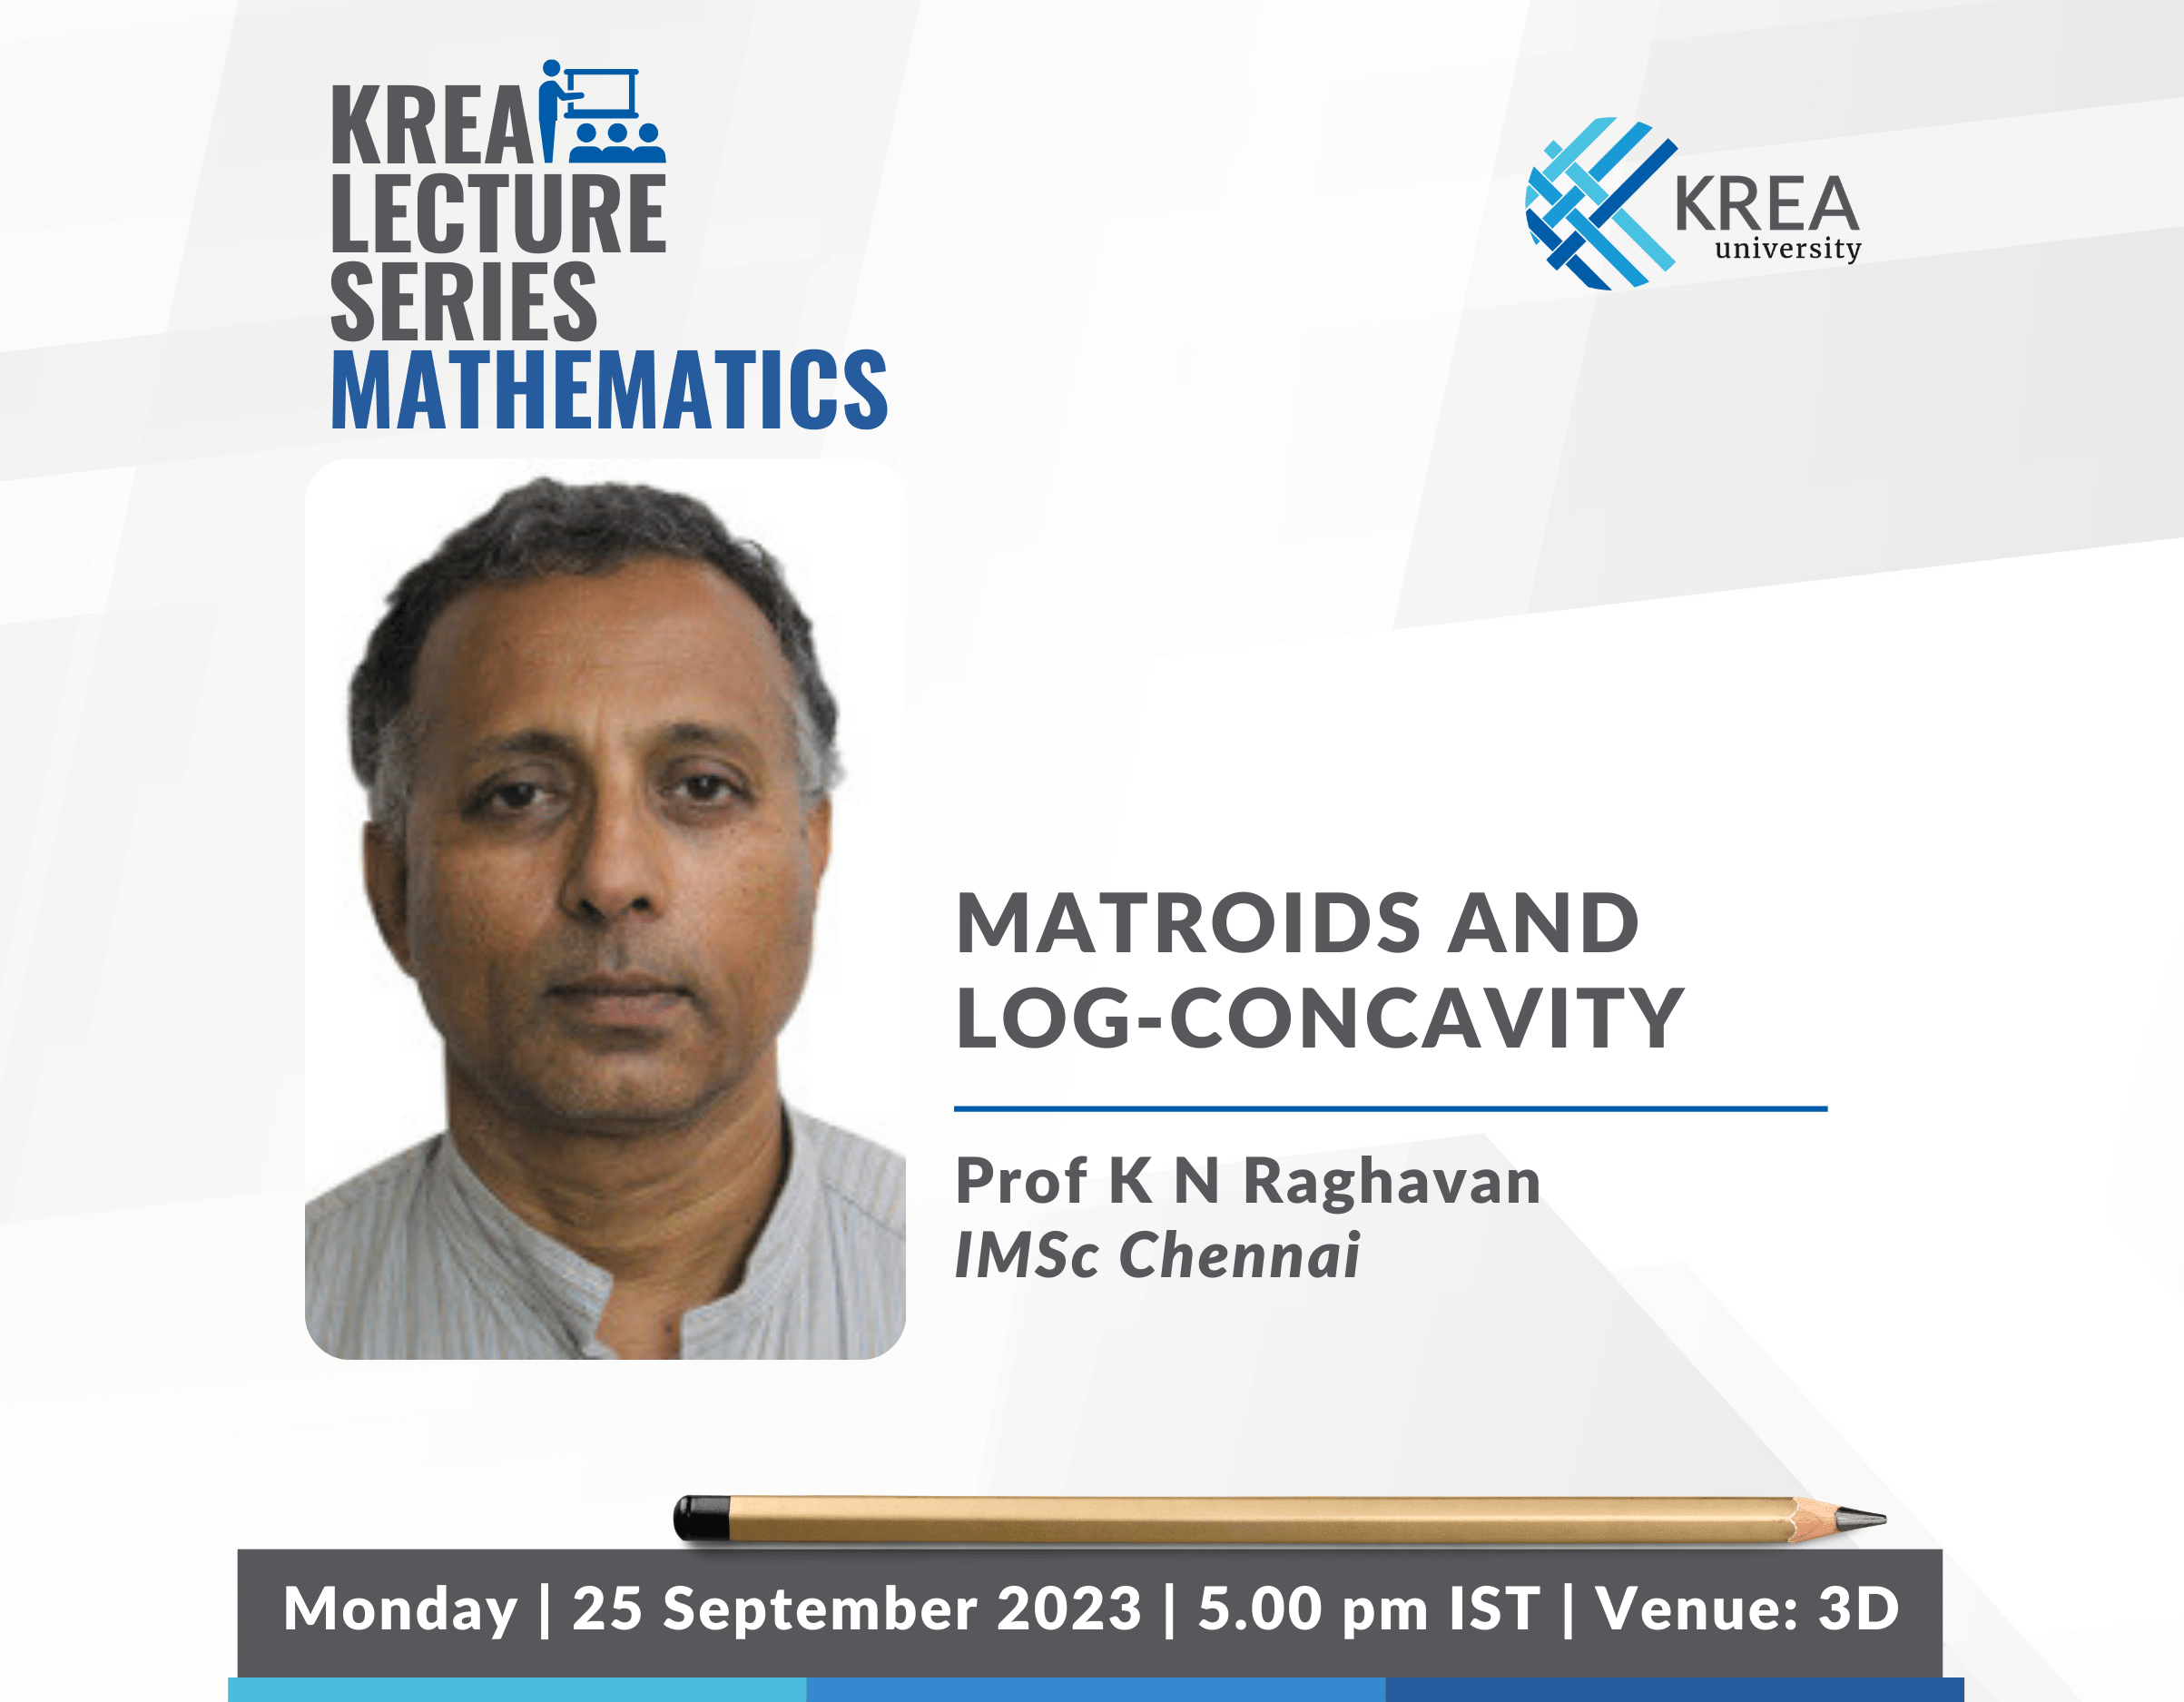 Krea Mathematics Colloquium – Matroids and Log-concavity